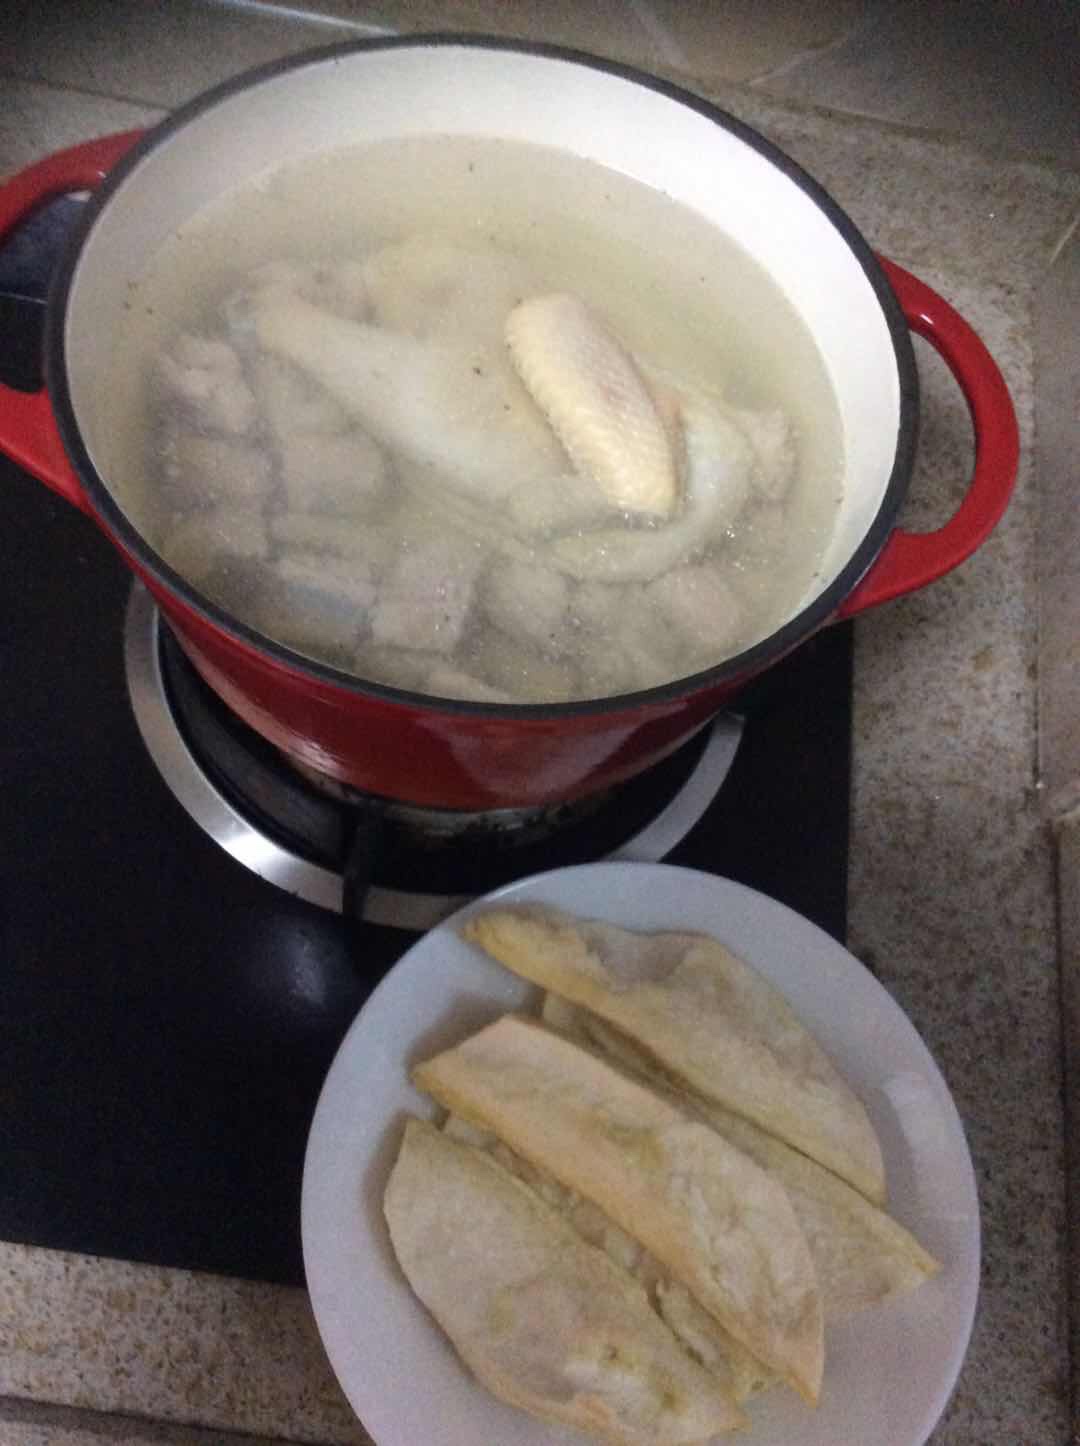 榴莲煲鸡汤的做法